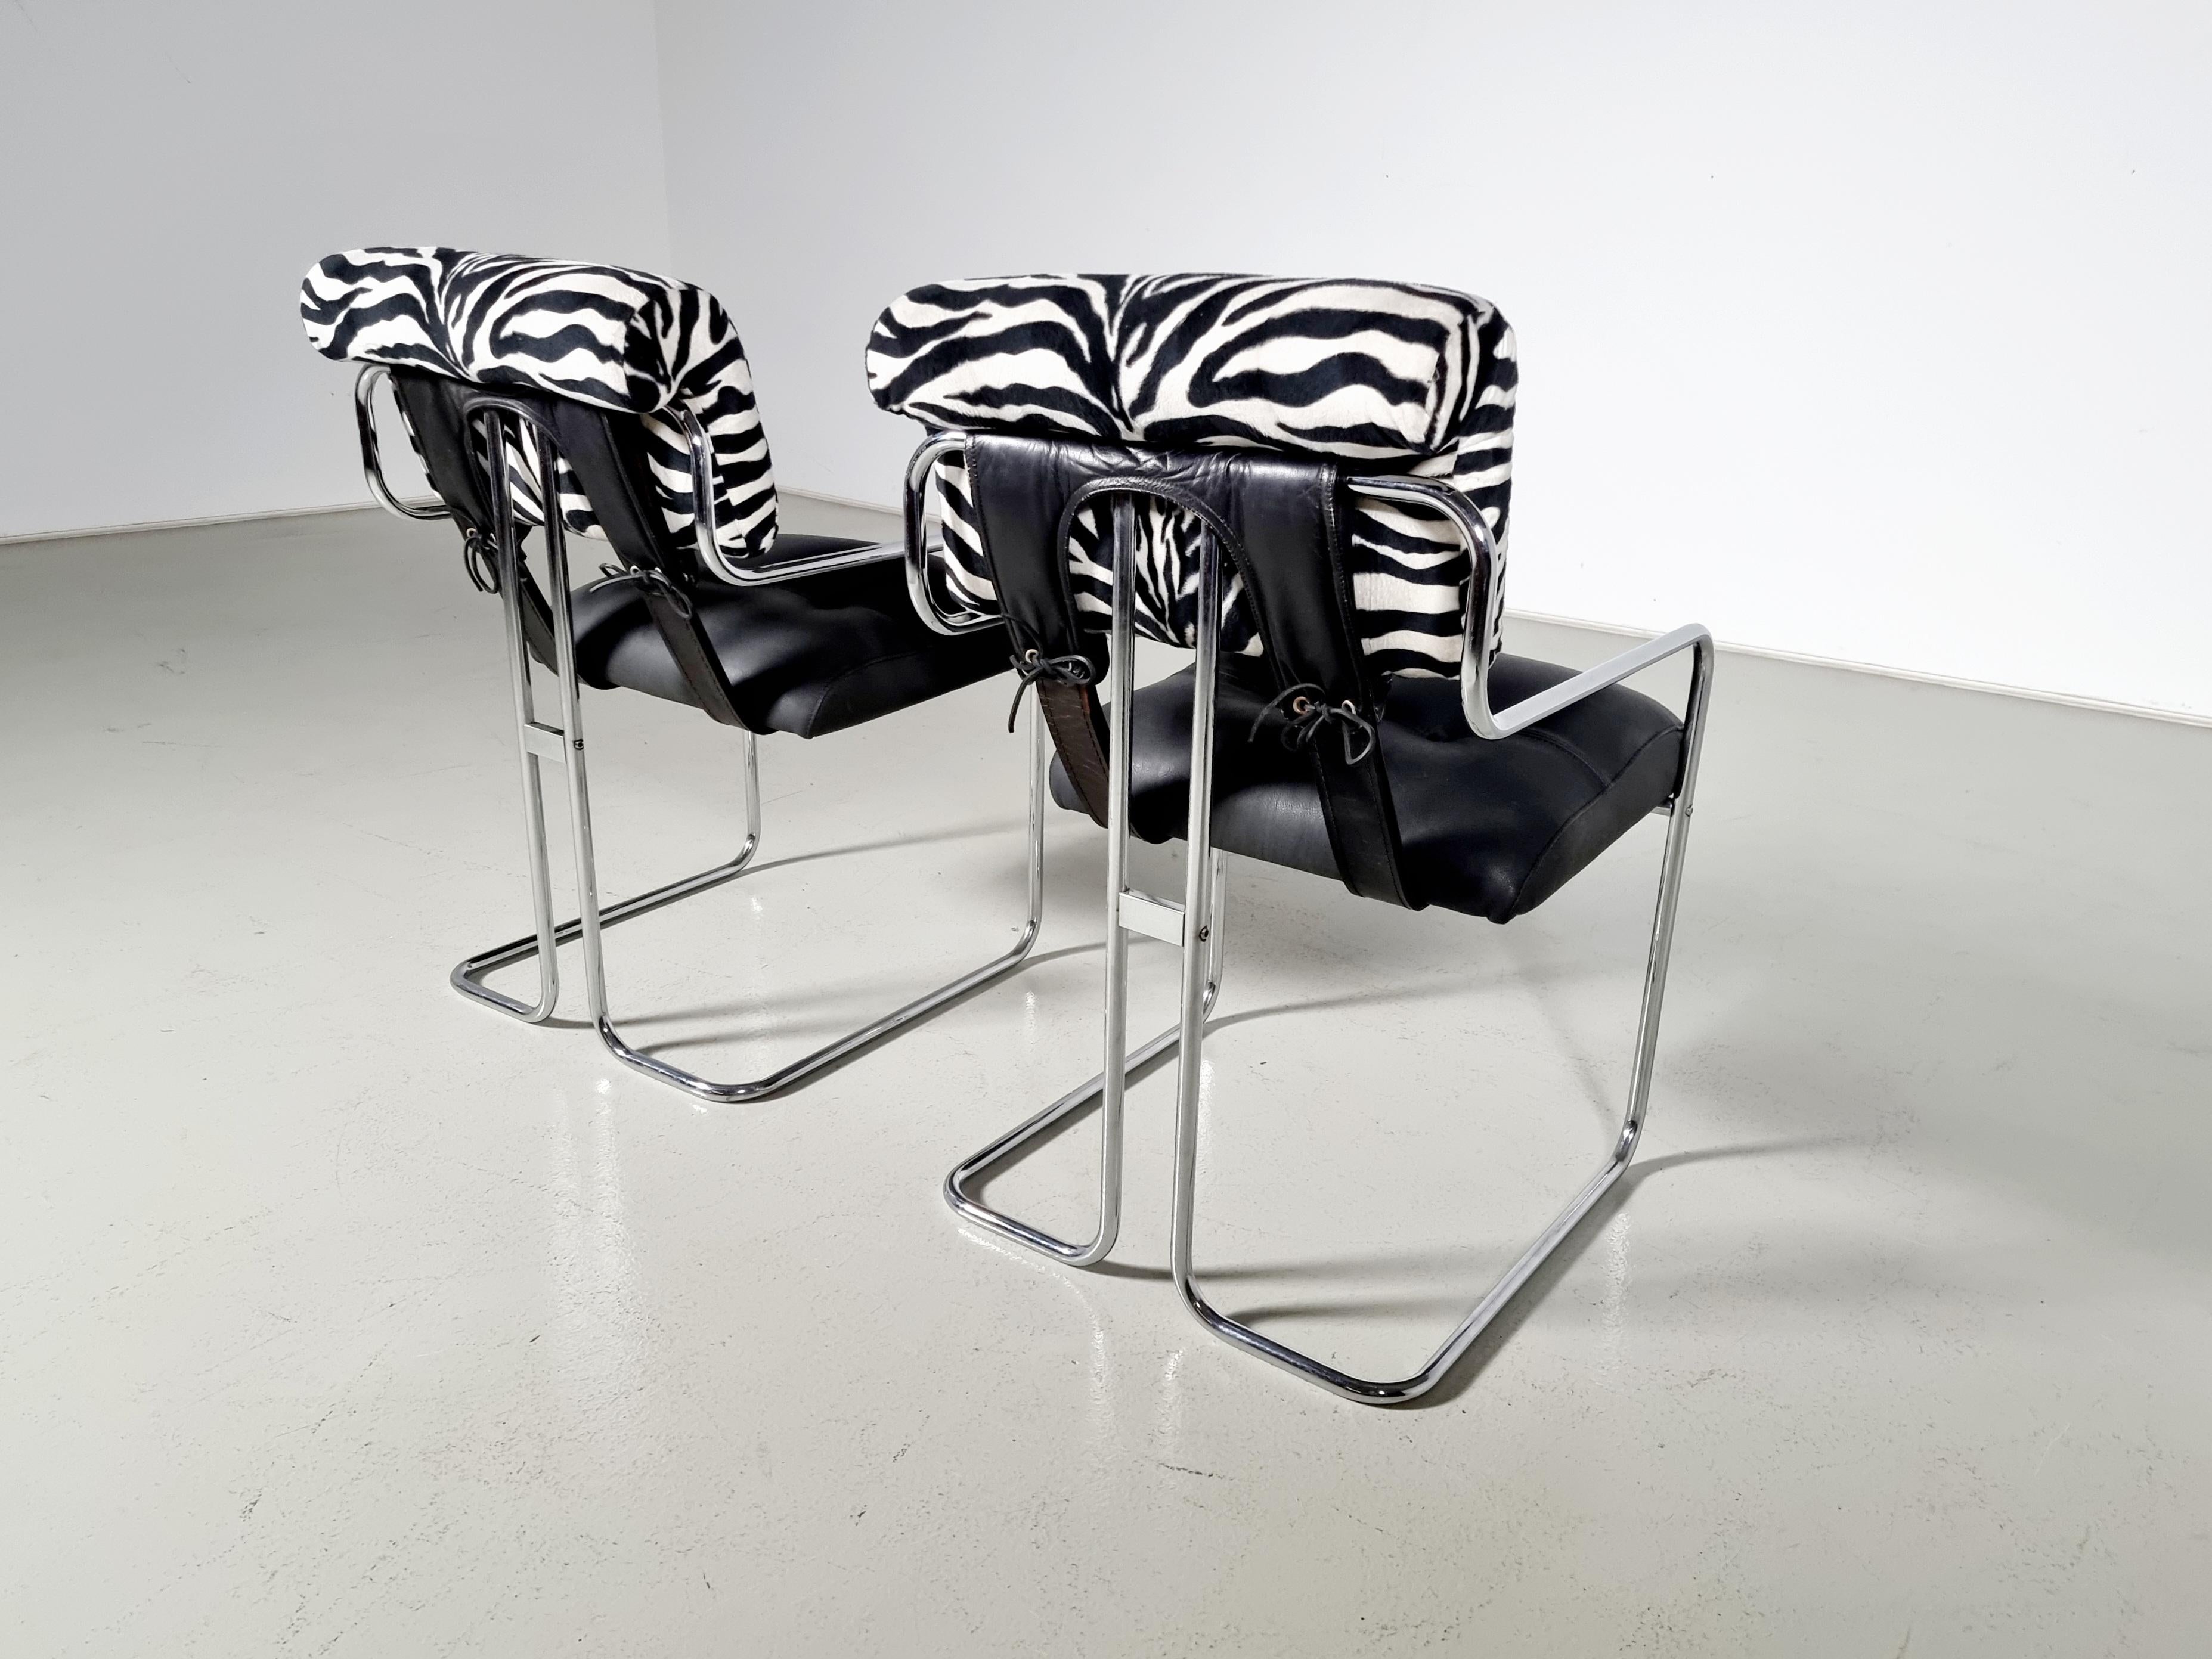 2 Stühle aus schwarzem Leder, Zebra-Stoff und Chrom, entworfen von Guido Faleschini für Mariani, Kollektion Pace. Die Polsterung aus Leder und Stoff ist an einem eleganten Gestell aus poliertem Stahlrohr befestigt und wird durch Lederriemen an der